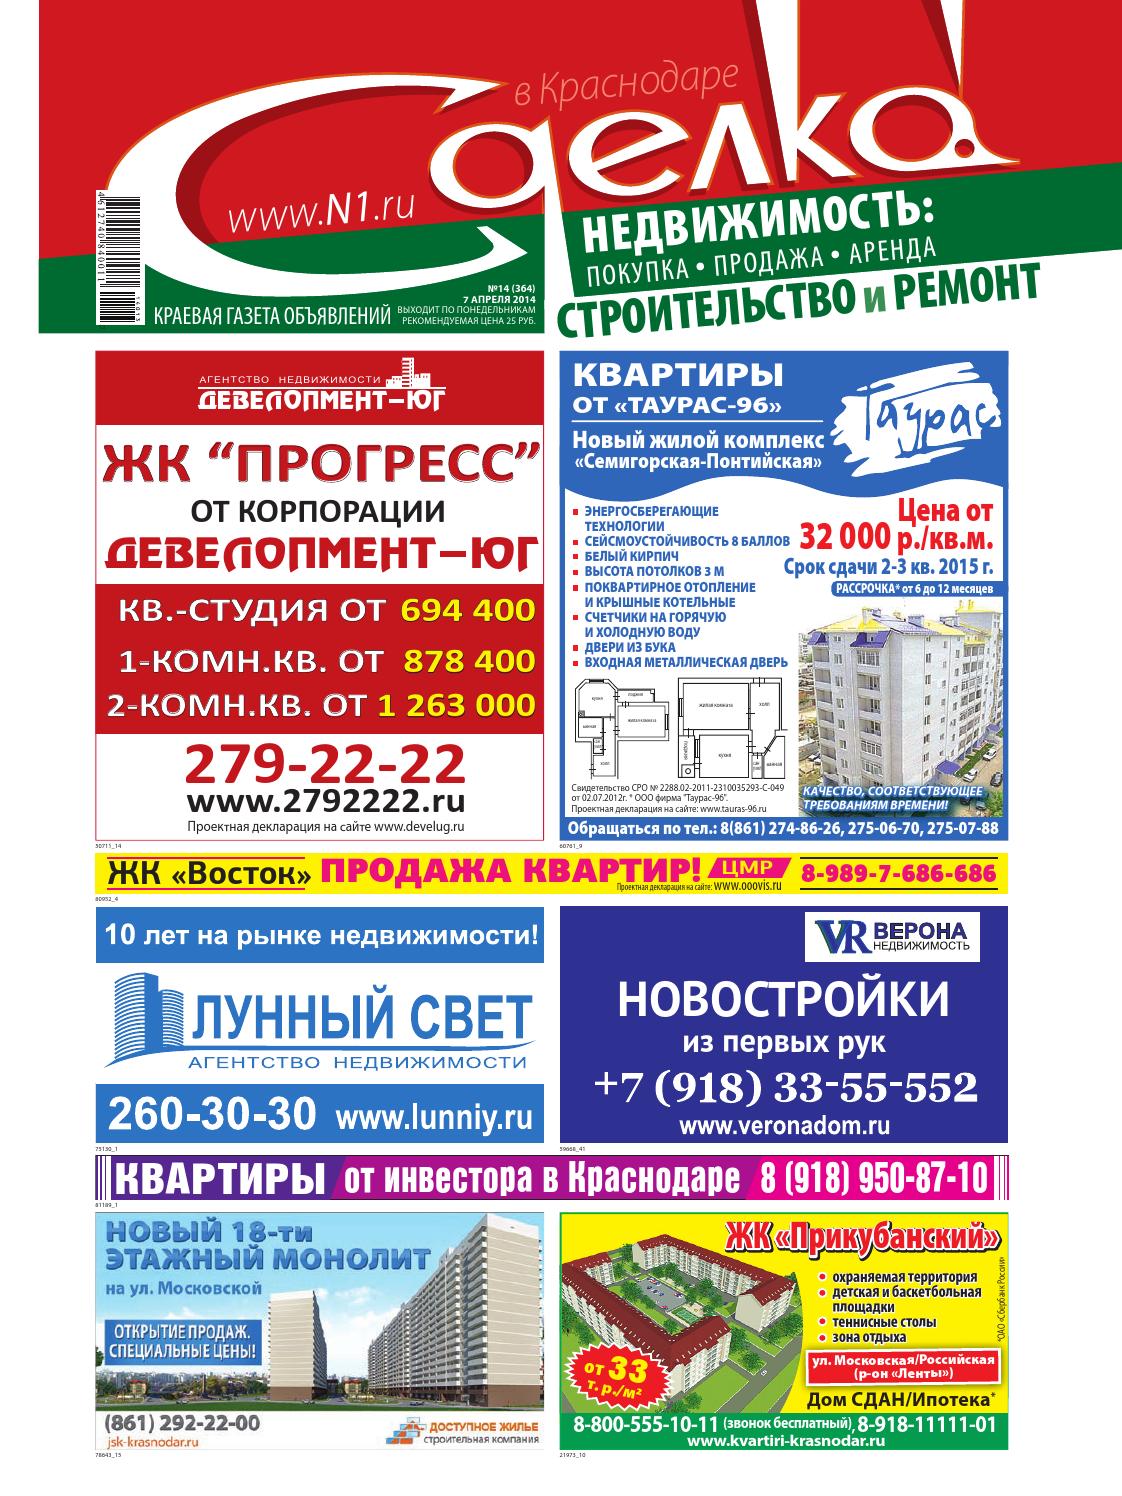 Сделка в Краснодаре №364, 7 апреля 2014